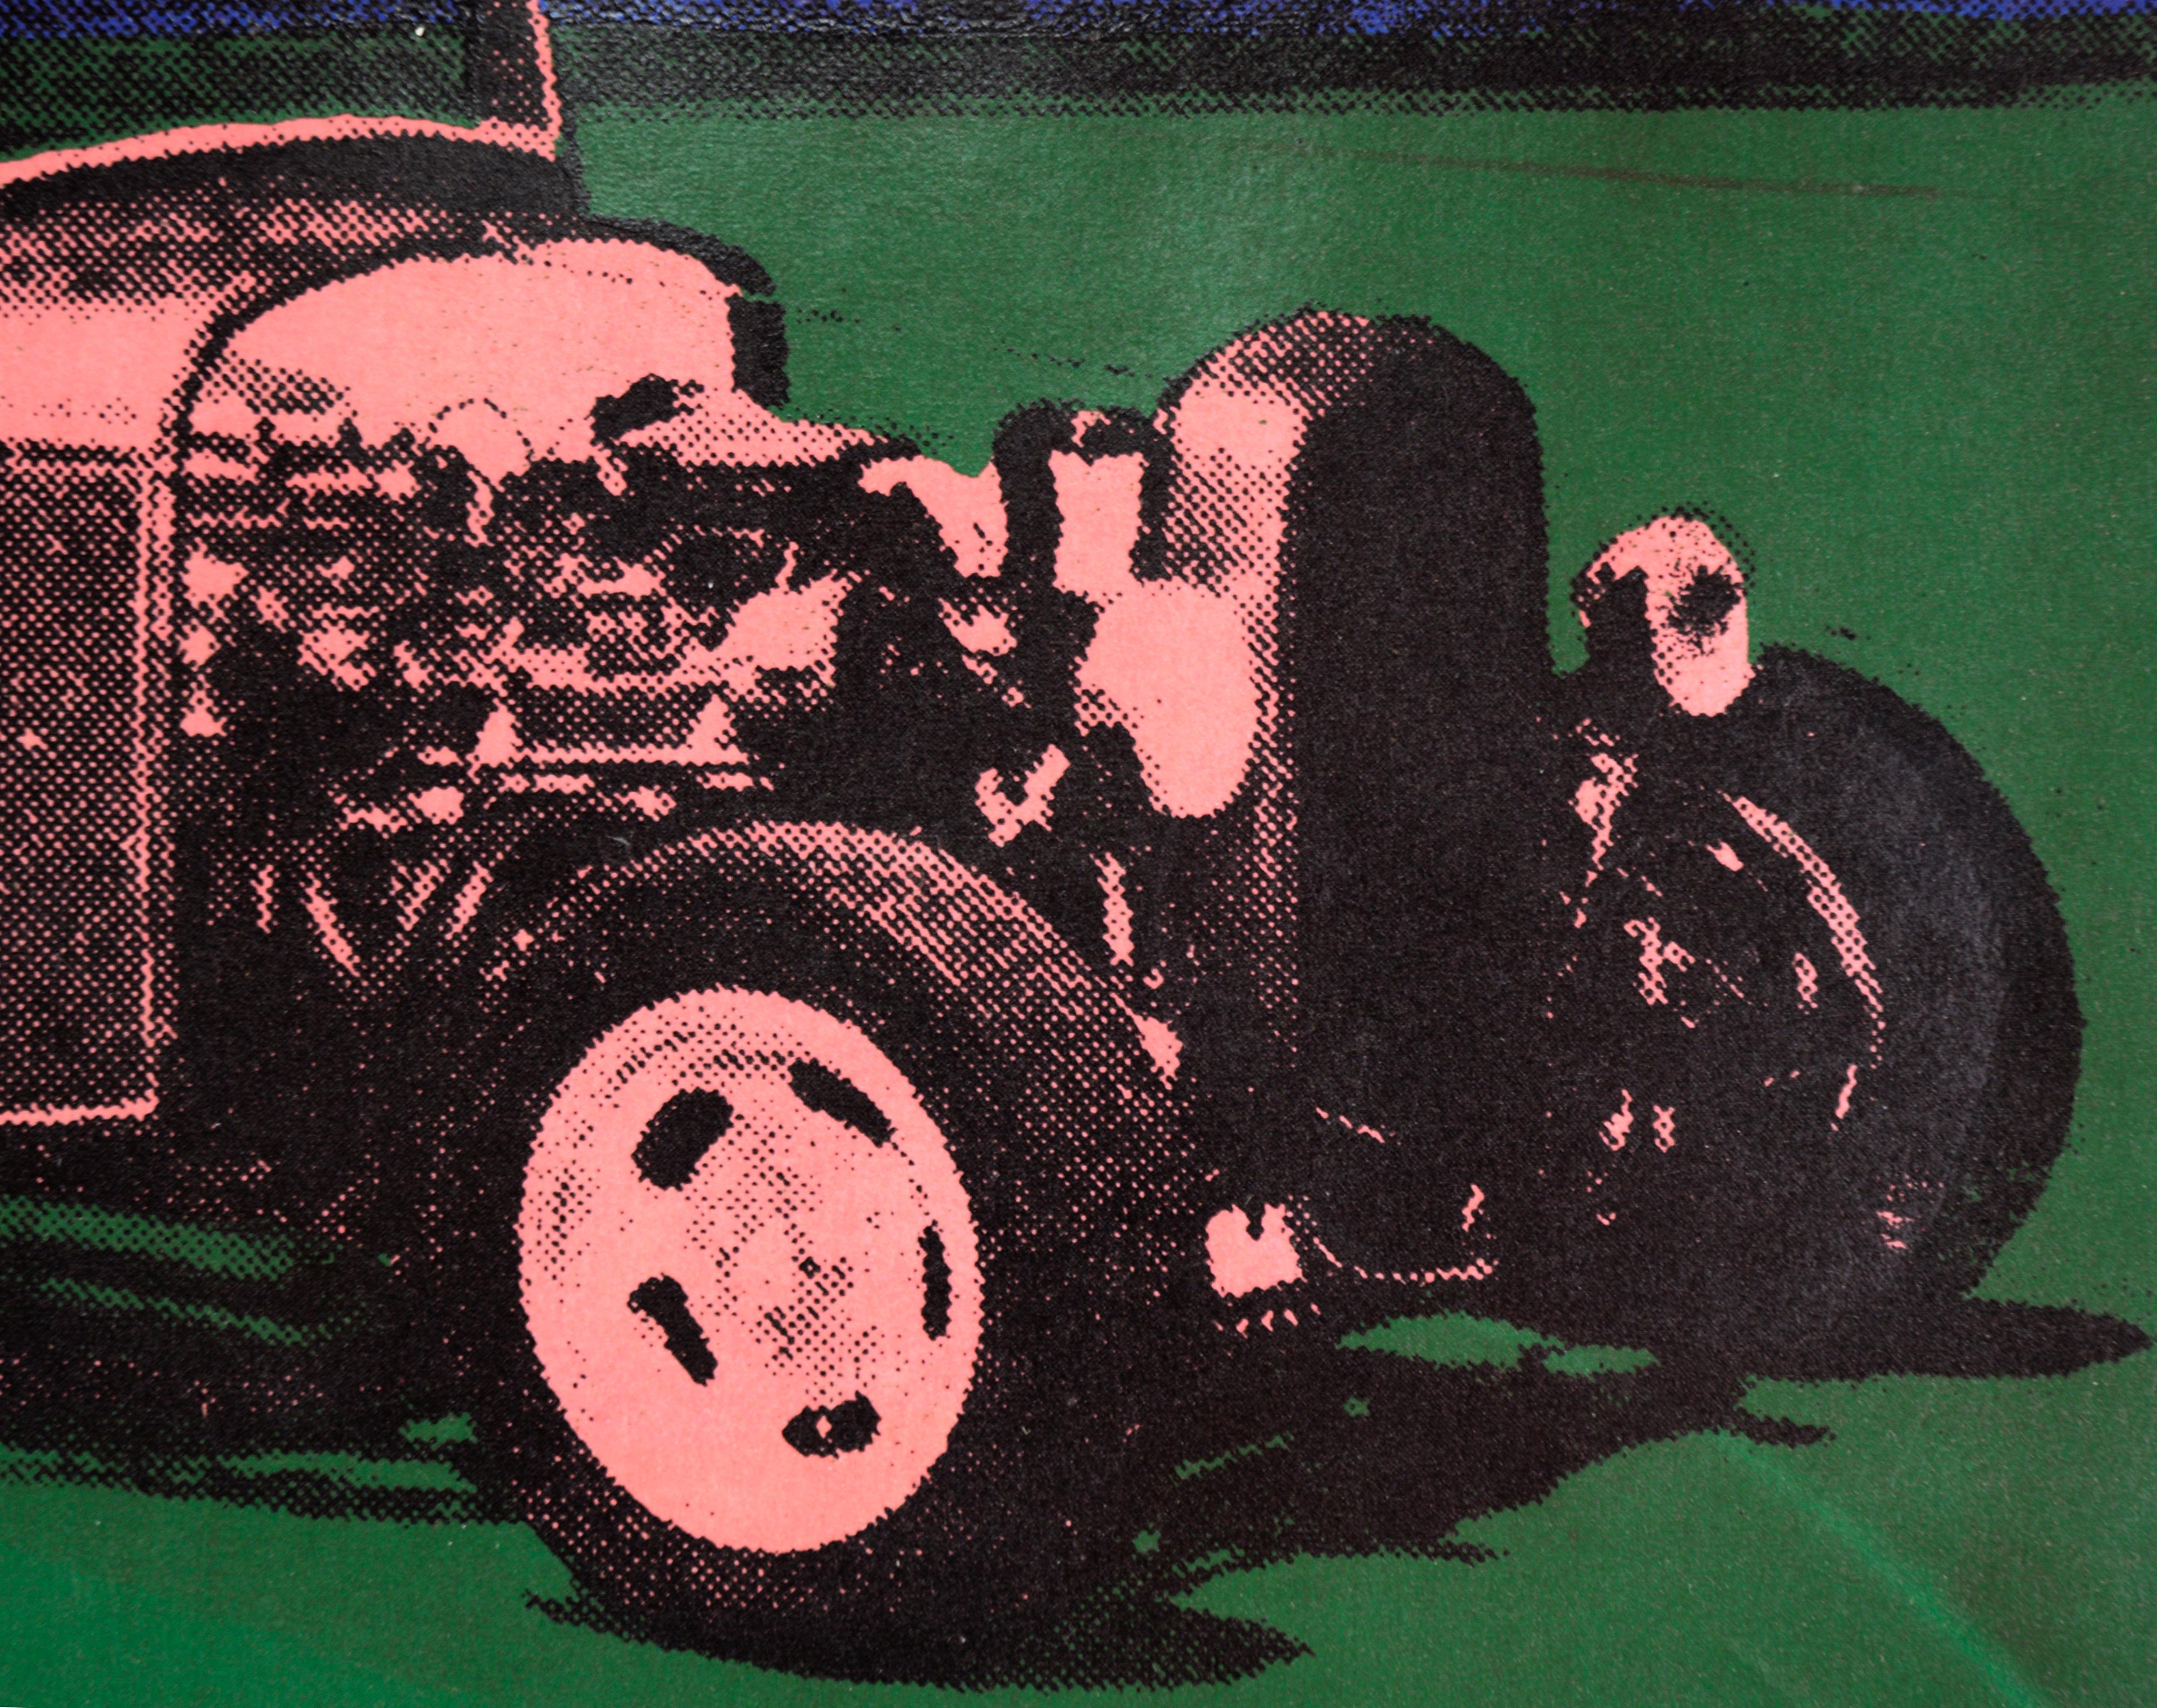 Hochgradig gesättigter mehrschichtiger Siebdruck von Steve J. Pon (20. Jahrhundert). Ein Roadster aus den 1930er Jahren ist auf einer Wiese vor einer Baumkulisse geparkt. Das Auto ist in Rosa mit schwarzen Halbton-Punkten gehalten. Das Gras und der